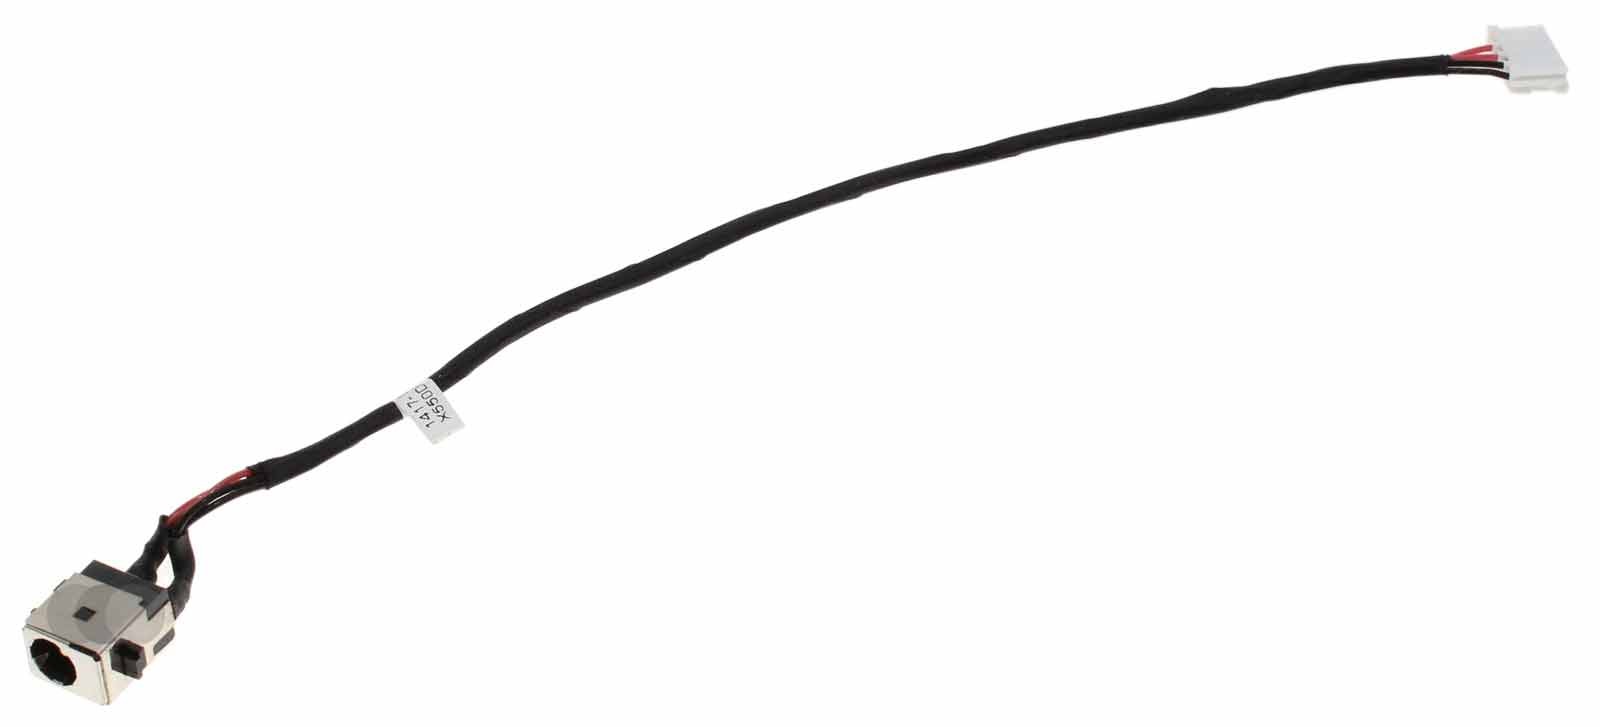 Netzteilbuchse Stromanschluss mit Kabel für Asus X550DP, X550ZE, X550D, K550D, A550D, F550DP, wie 1417-008J00